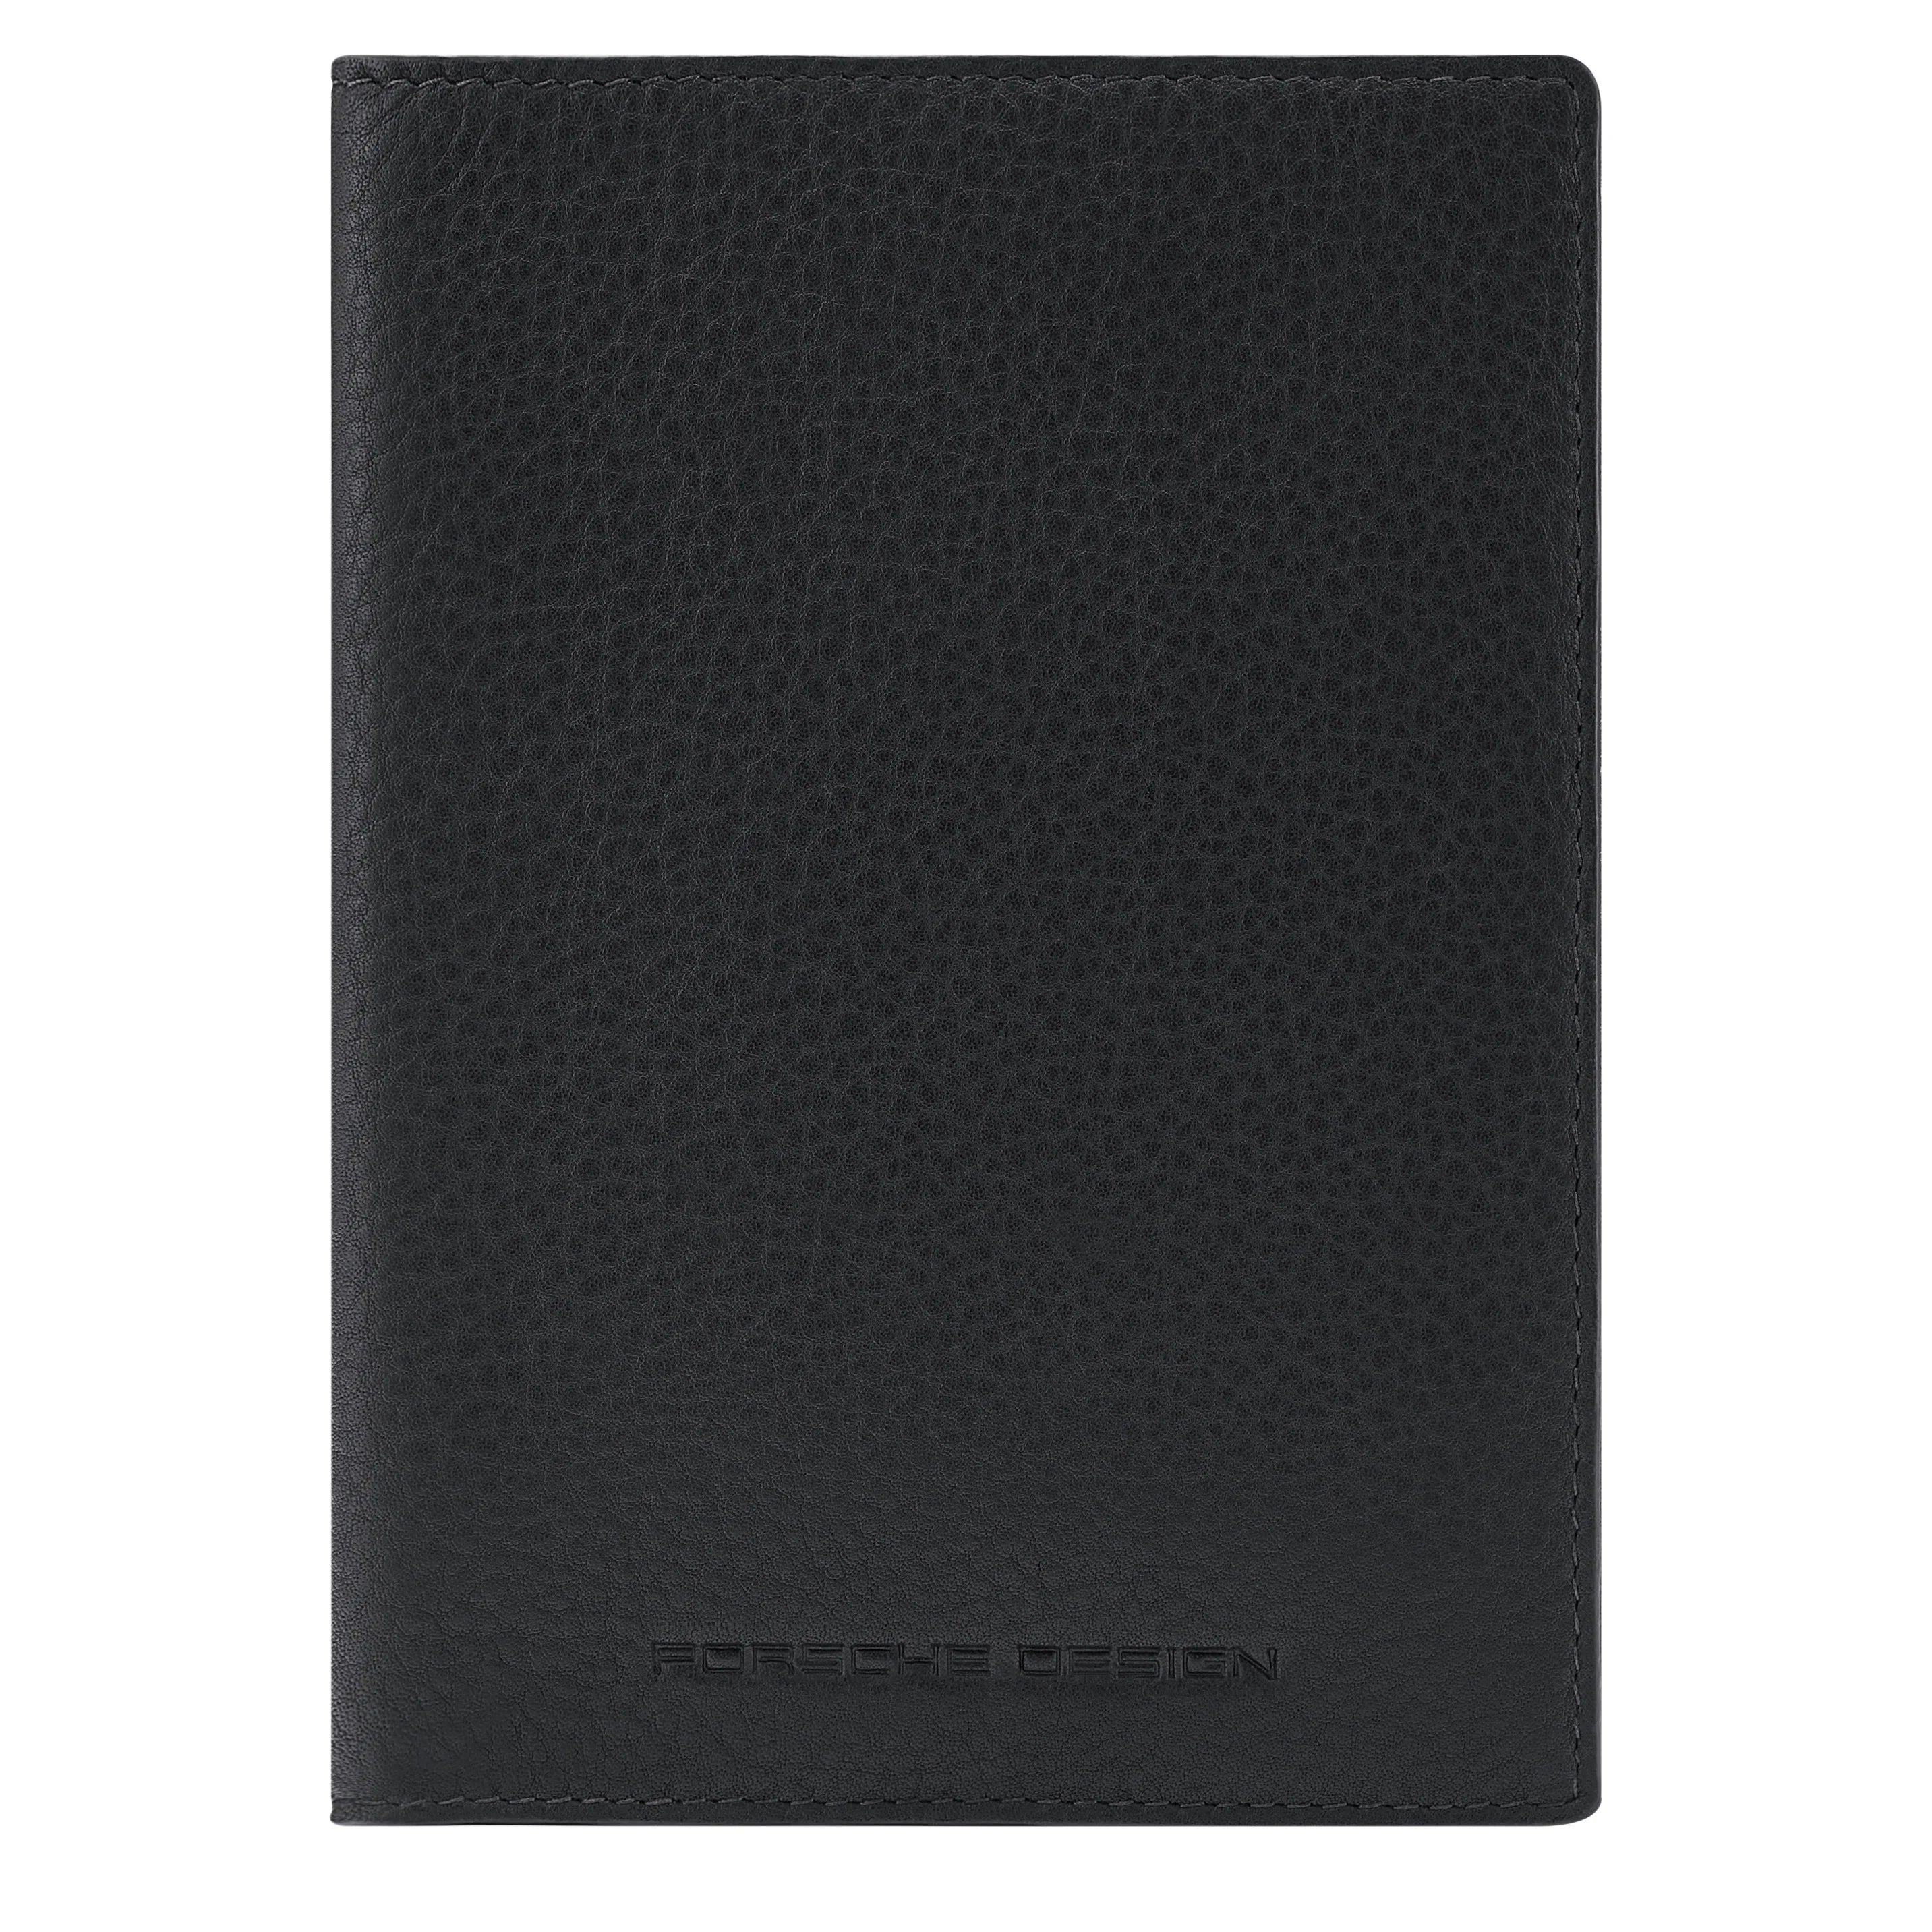 Porsche Design Accessories Business Passport Holder RFID 14 cm - Dark Brown